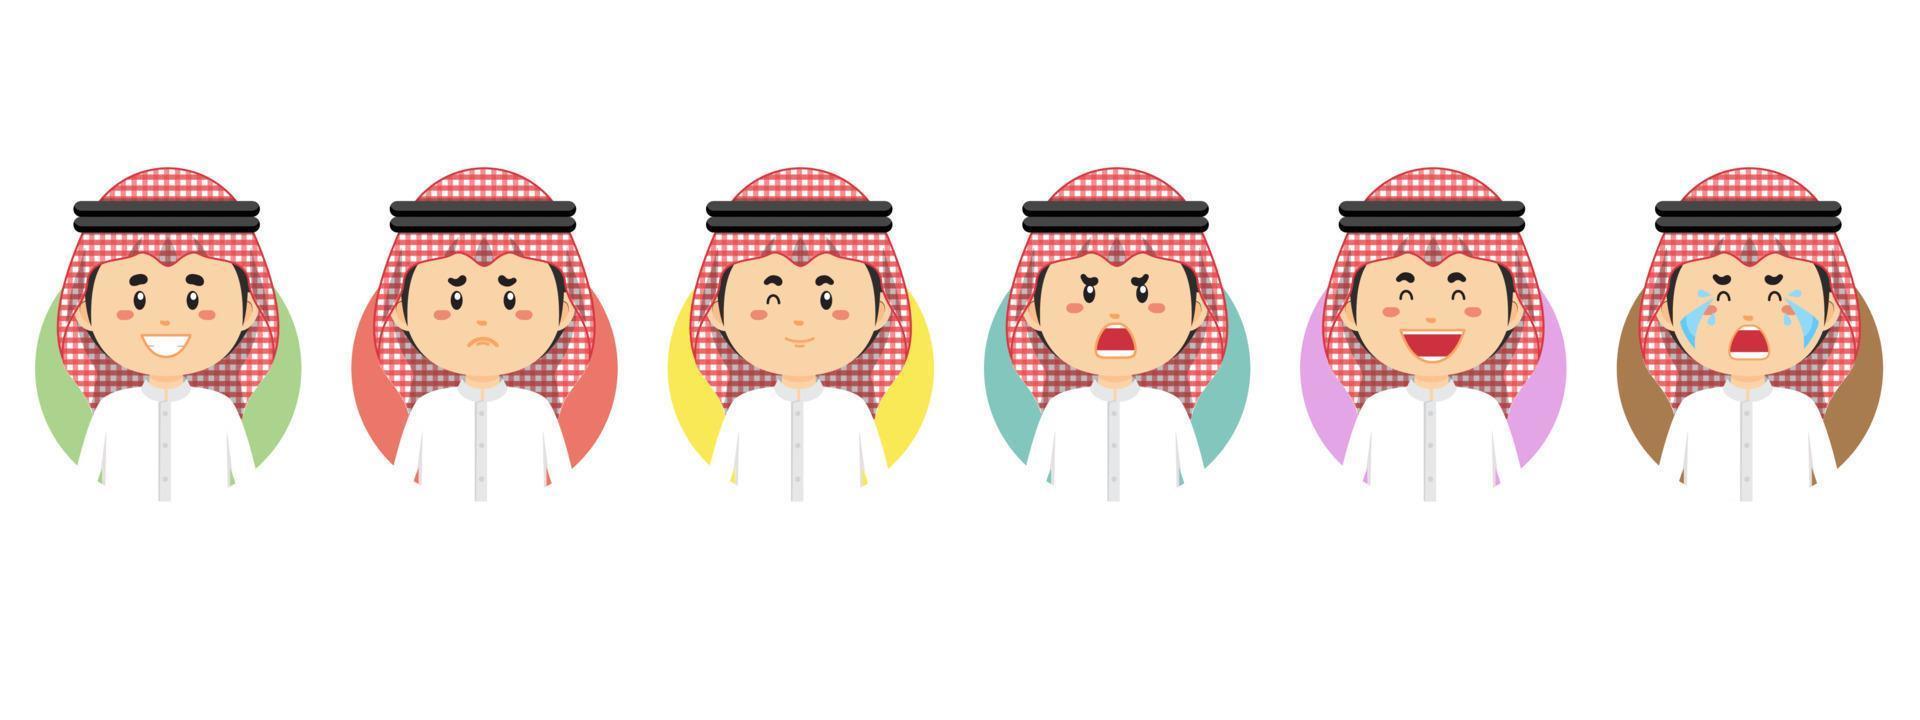 Jordanië avatar met verschillende uitdrukkingen vector